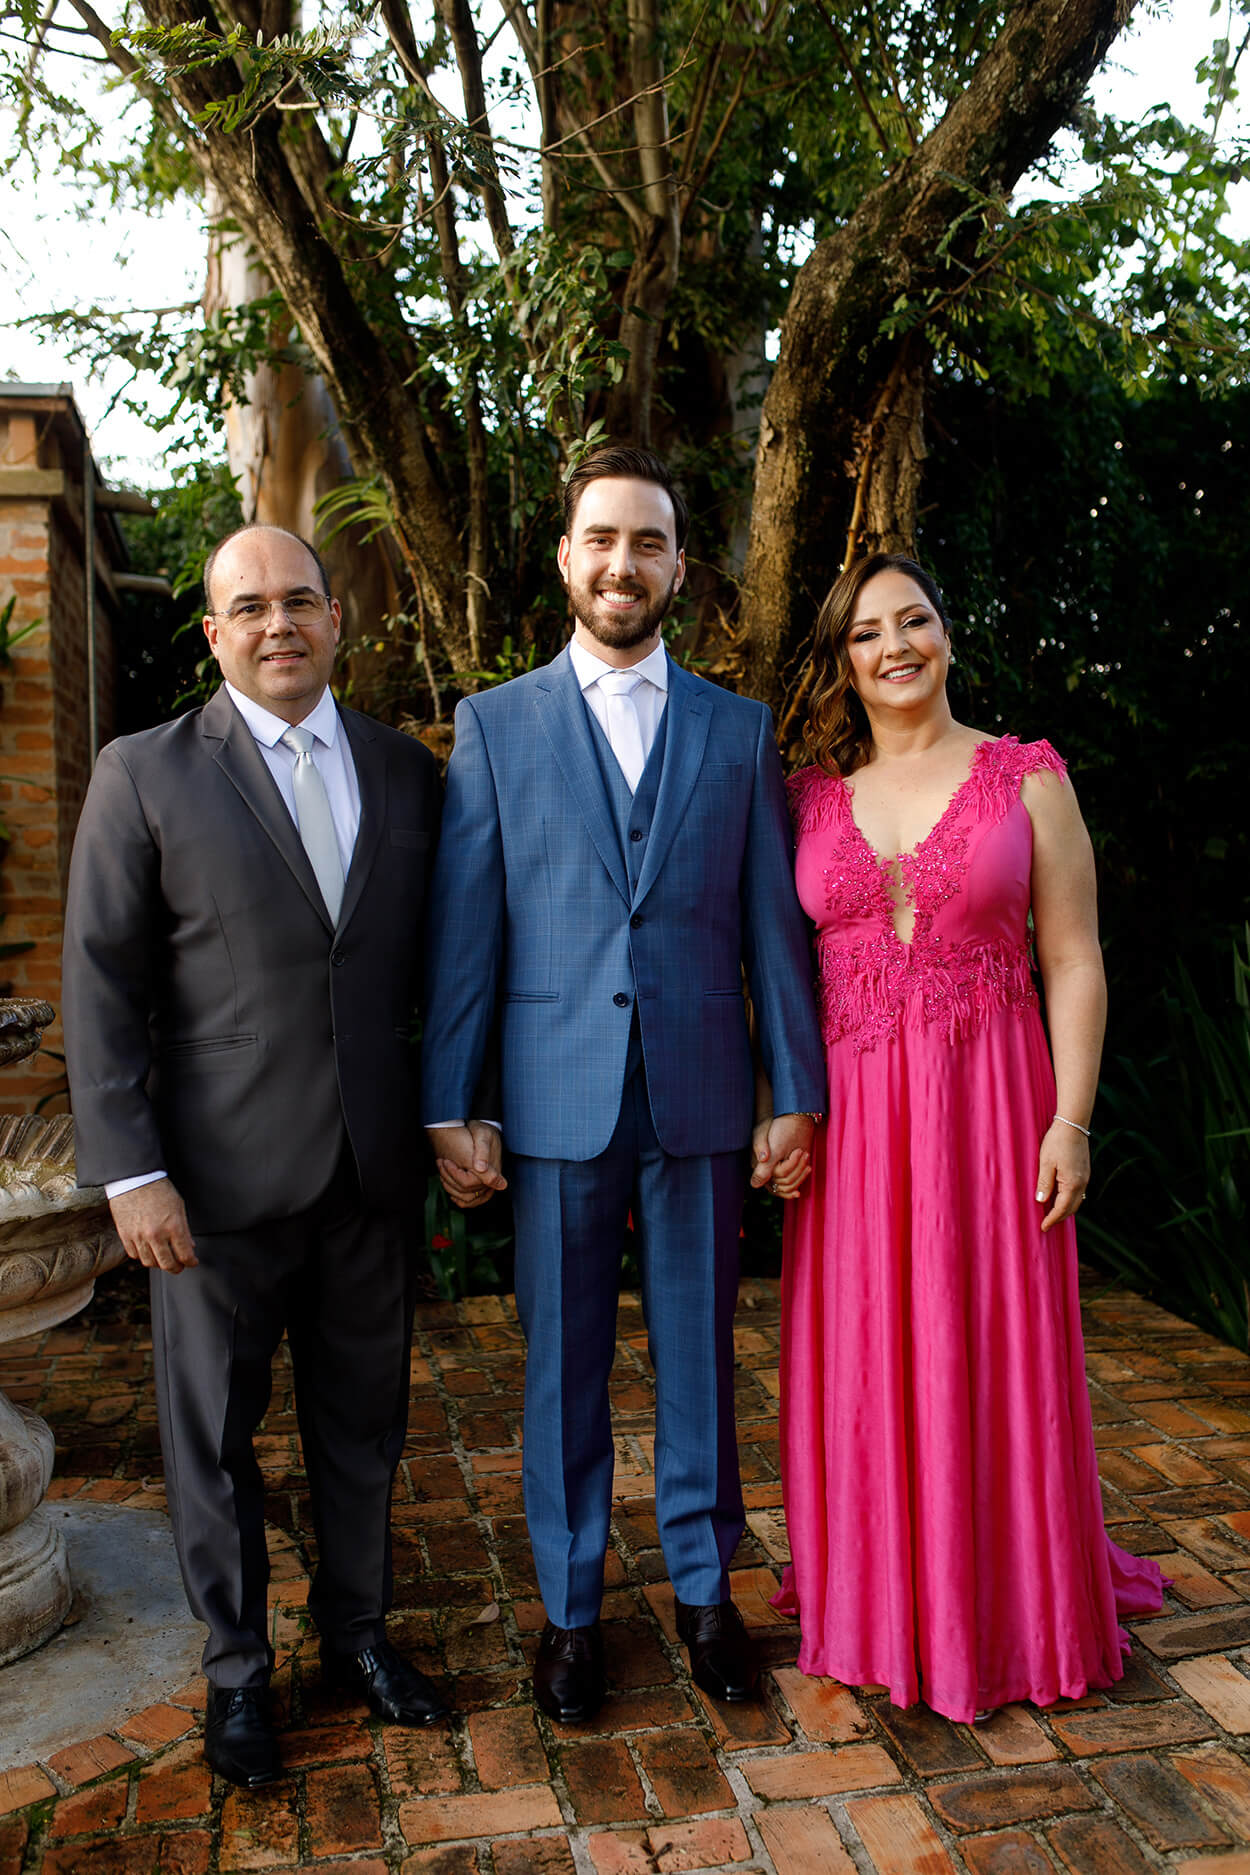 noivo com terno e colete azul riscado com gravata branca de mãos dadas com o pai com terno preto e gravata branca e mãe com vestido longo pink 